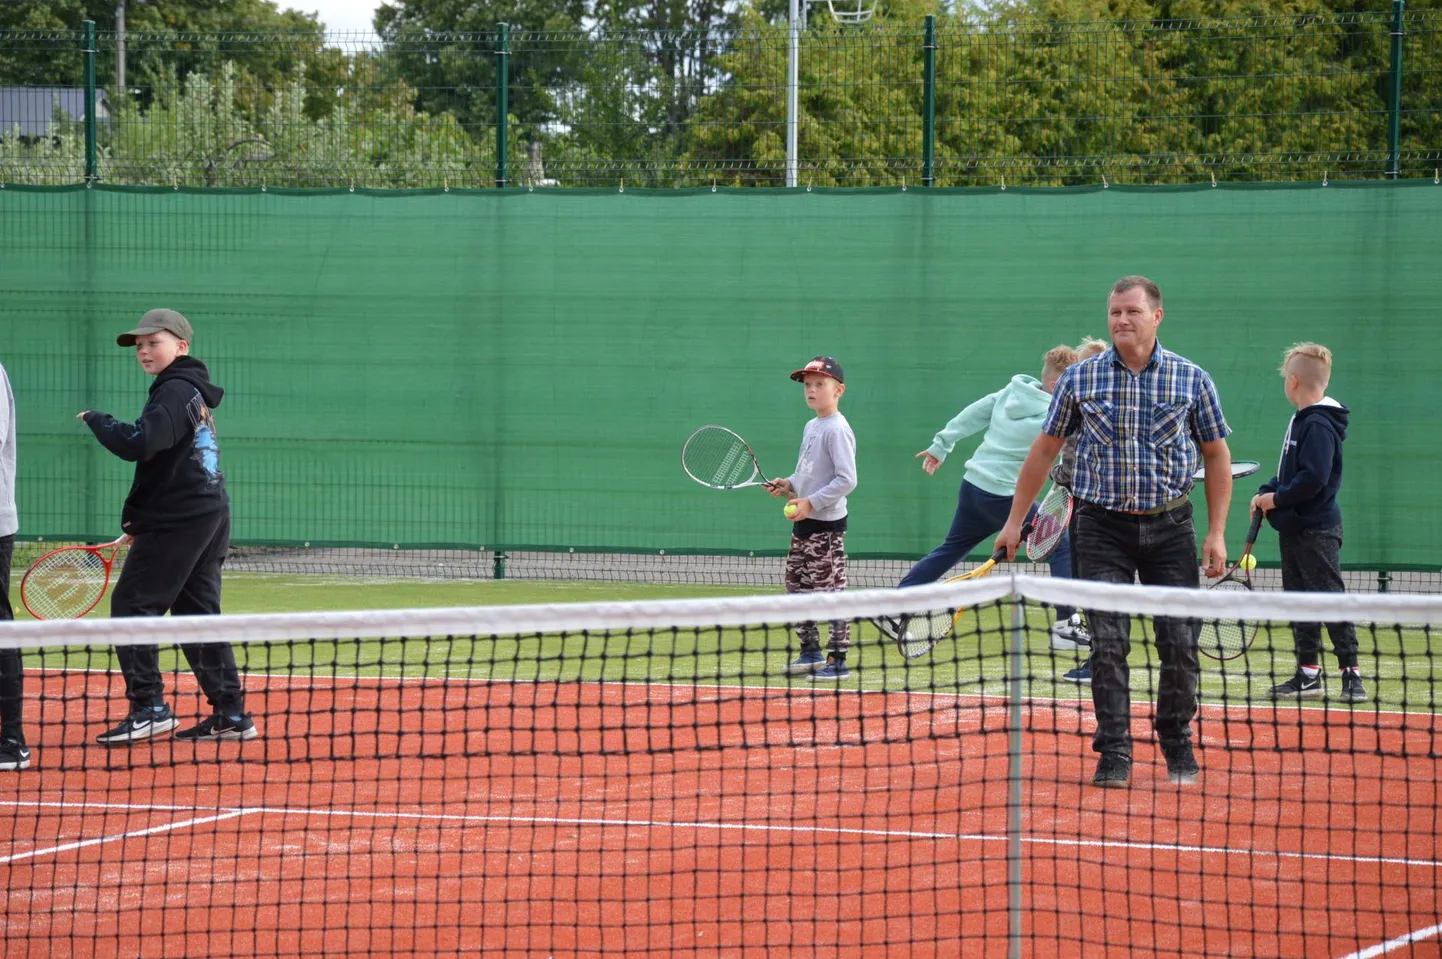 Pärnu-Jaagupis avatud uut tenniseväljakut oli sisseõnnistamas ammulaskmises maailma paremikku kuuluv Teet Tagapere, kes lubas uut spordiareeni edaspidigi külastada.